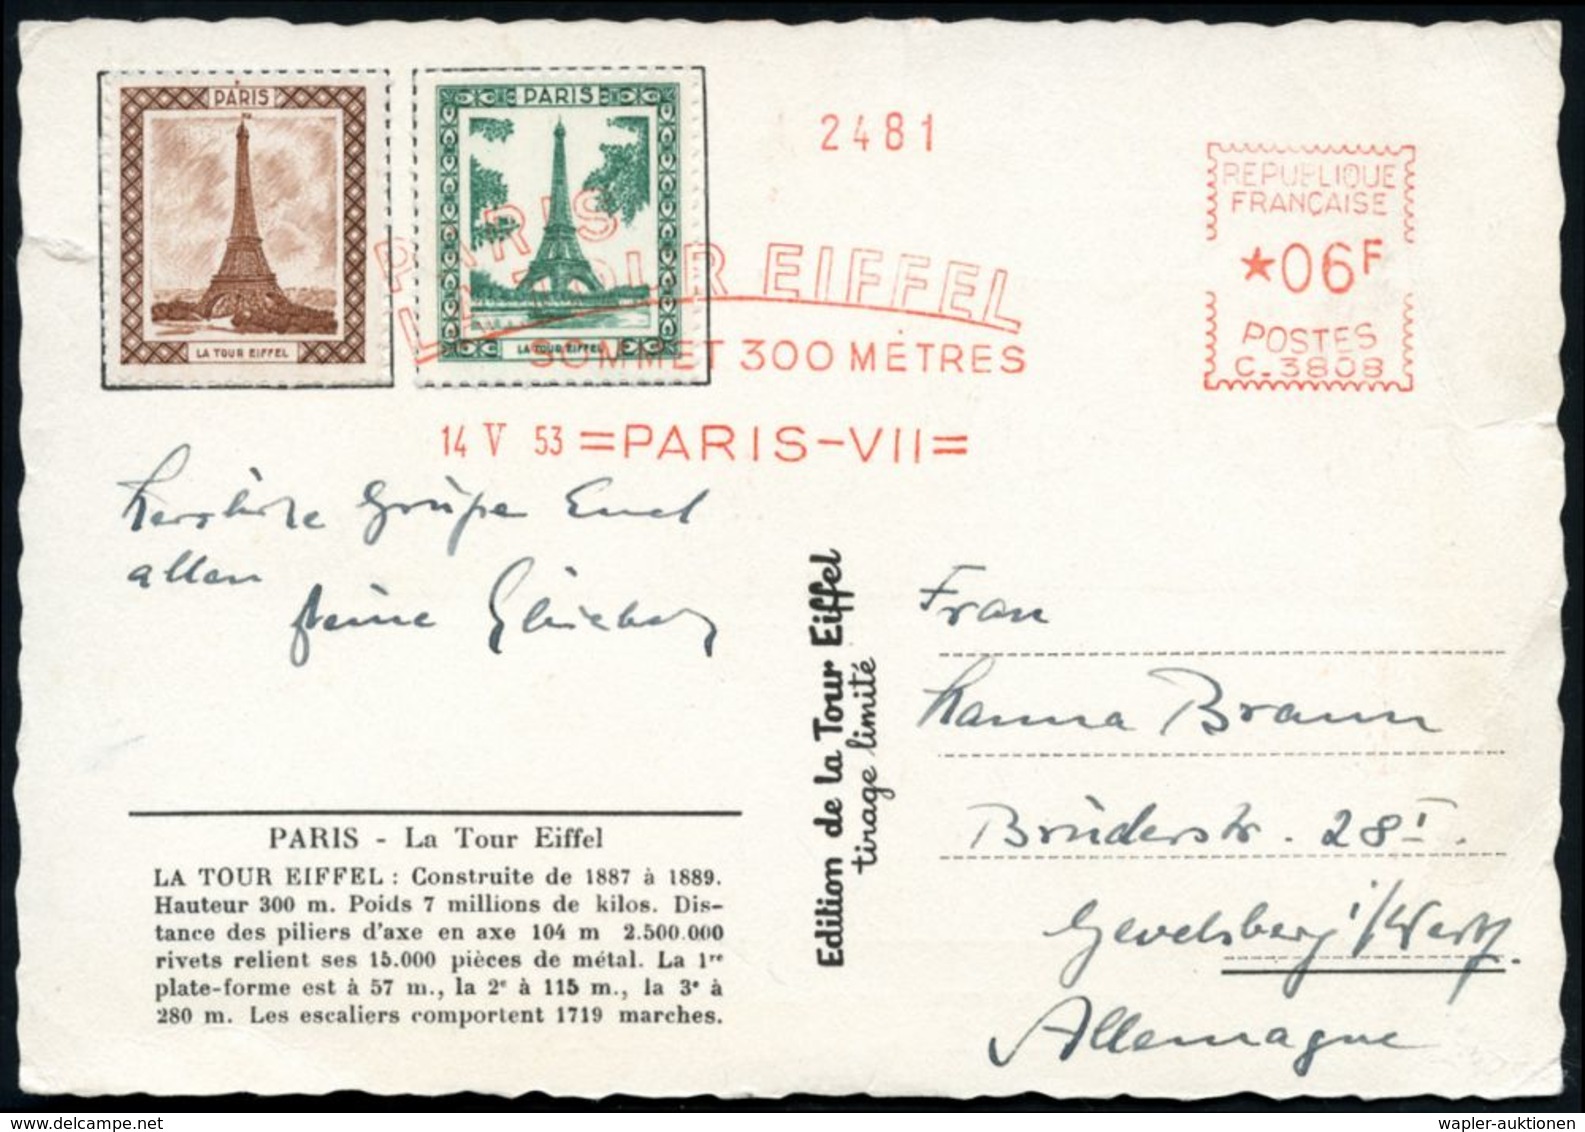 FRANKREICH 1953 (14.5.) AFS.: PARIS-VII/C.3808/PARIS/TOUR EIFFEL/SOMMET 300 METRES Auf 2 Eiffel-Turm-Vignetten + Rs. Wei - Monuments